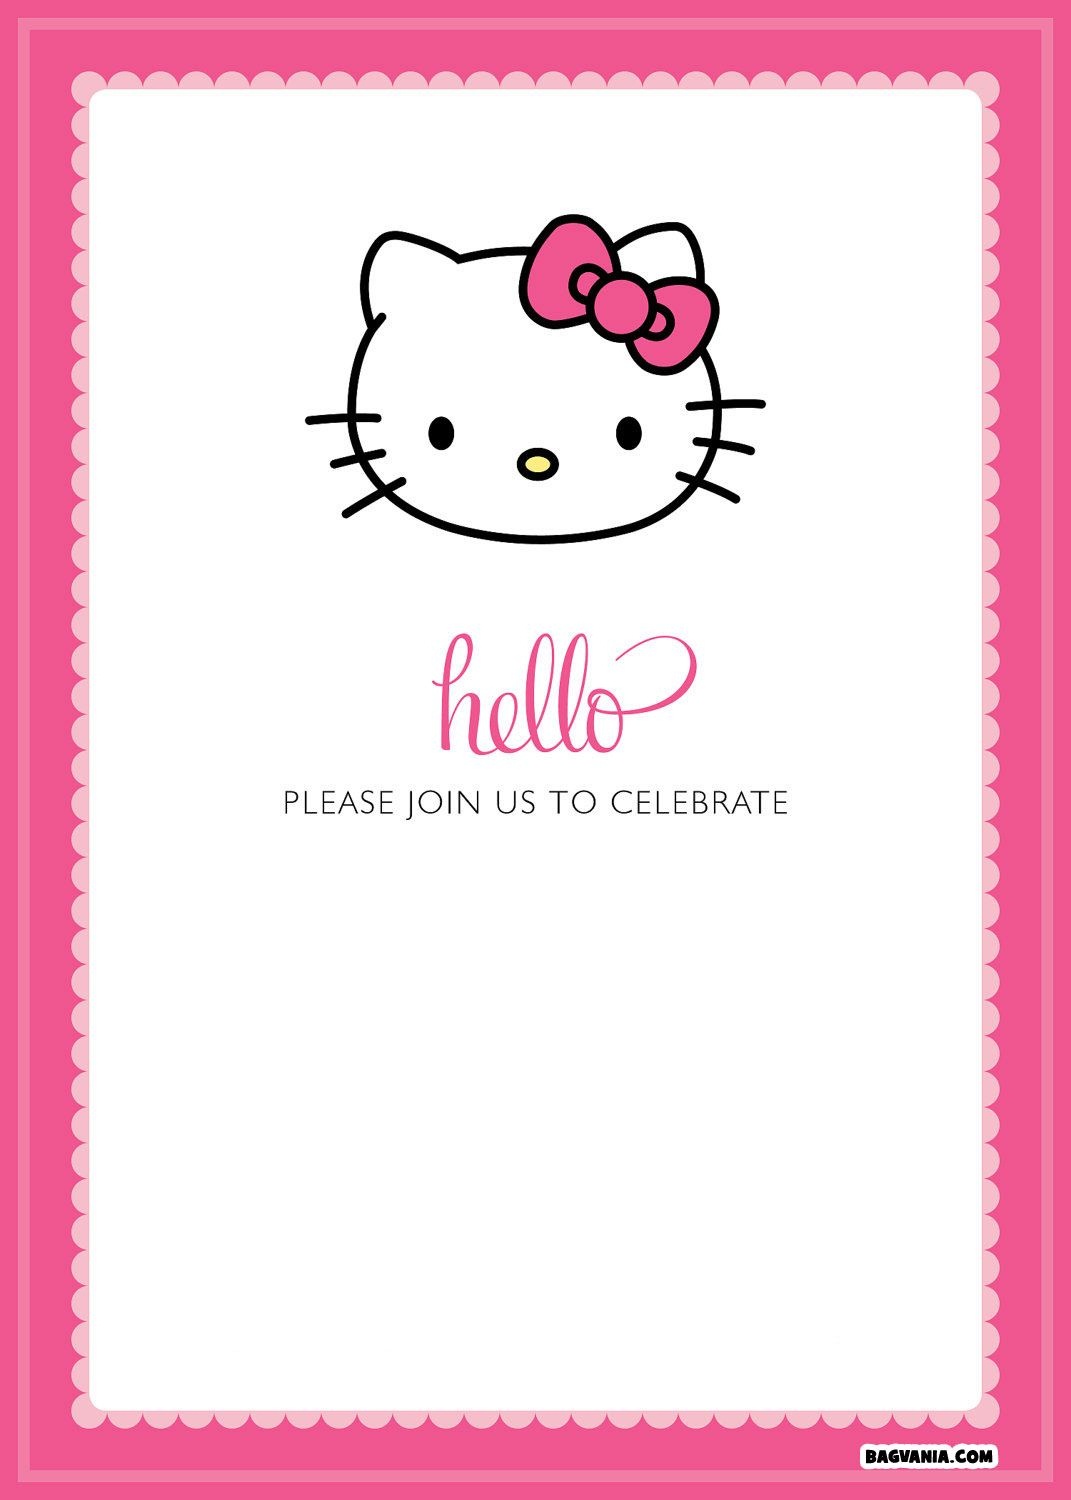 Free Printable Hello Kitty Birthday Invitations – Bagvania Free - Hello Kitty Name Tags Printable Free